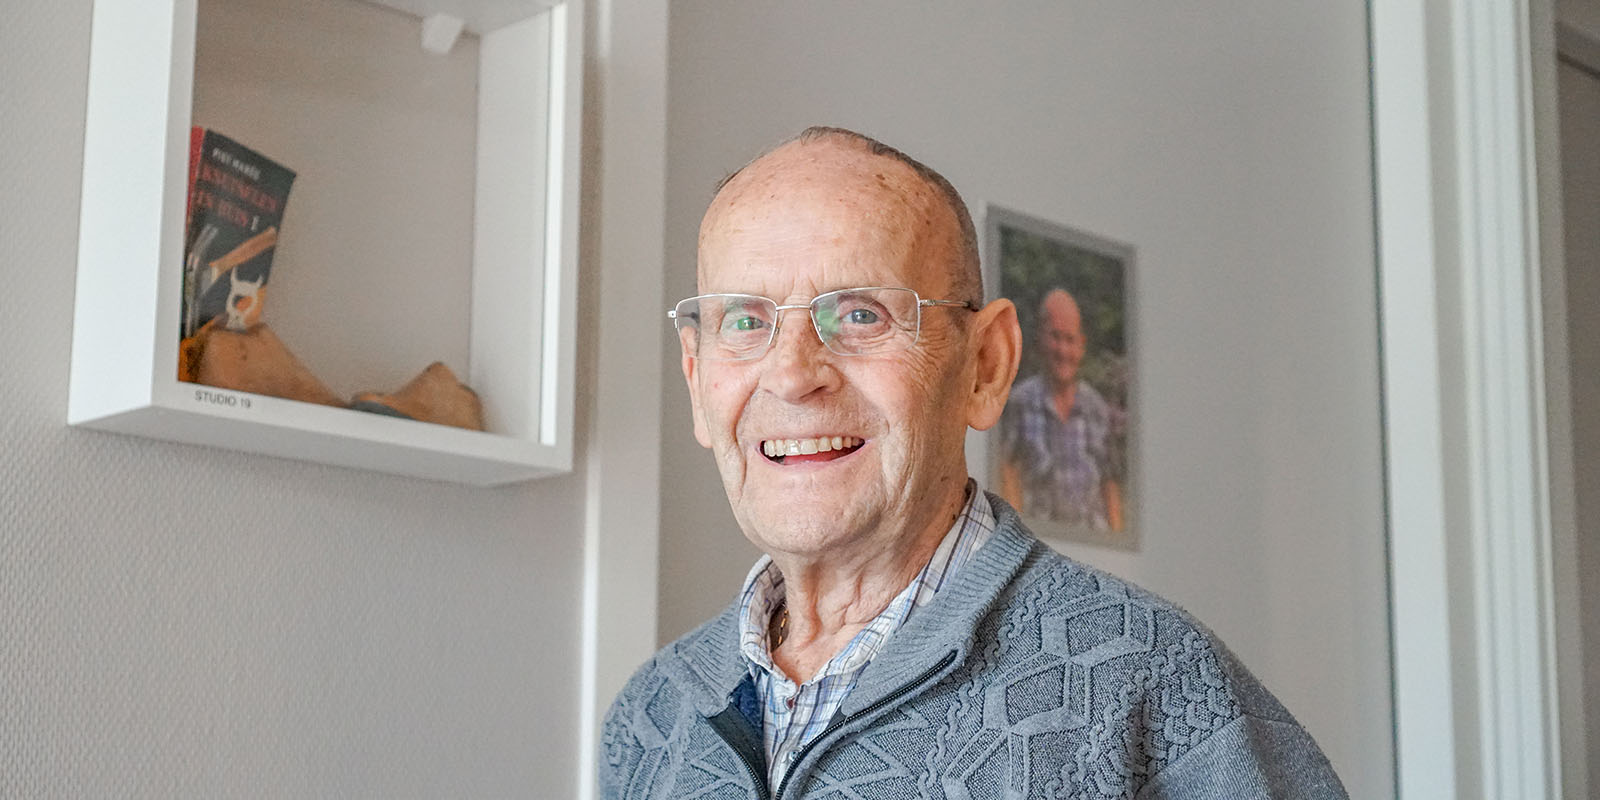 Portretfoto van Gerrit, voor zijn studio in Het Zevenheuvelenhuis in Groesbeek, waar hij vanwege zijn dementie woont. Hij lacht in de camera.